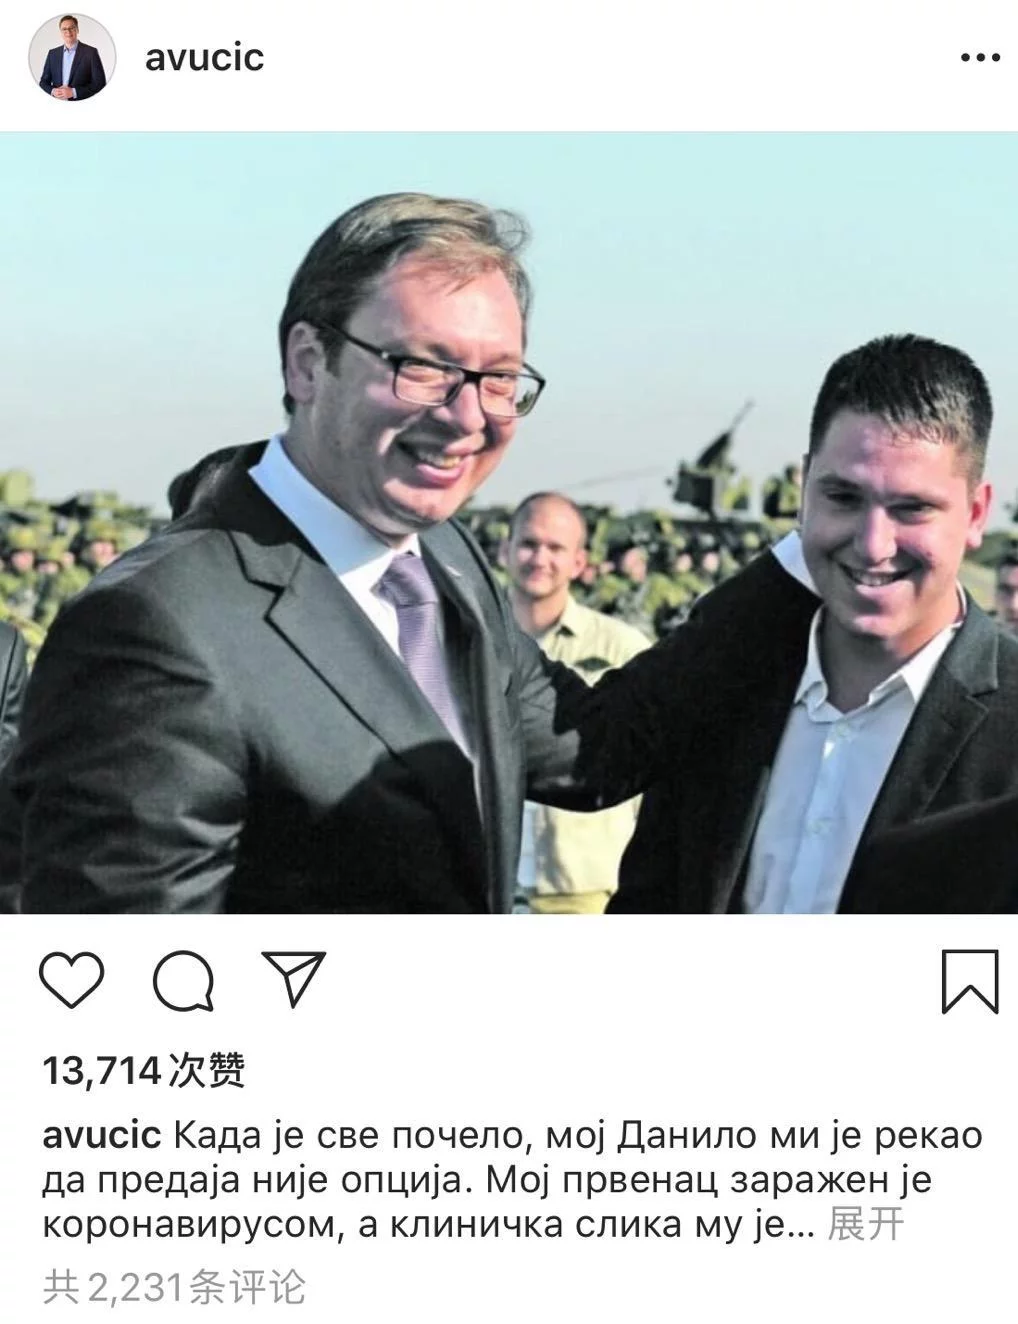 塞尔维亚总统武契奇之子新冠病毒检测呈阳性 热点